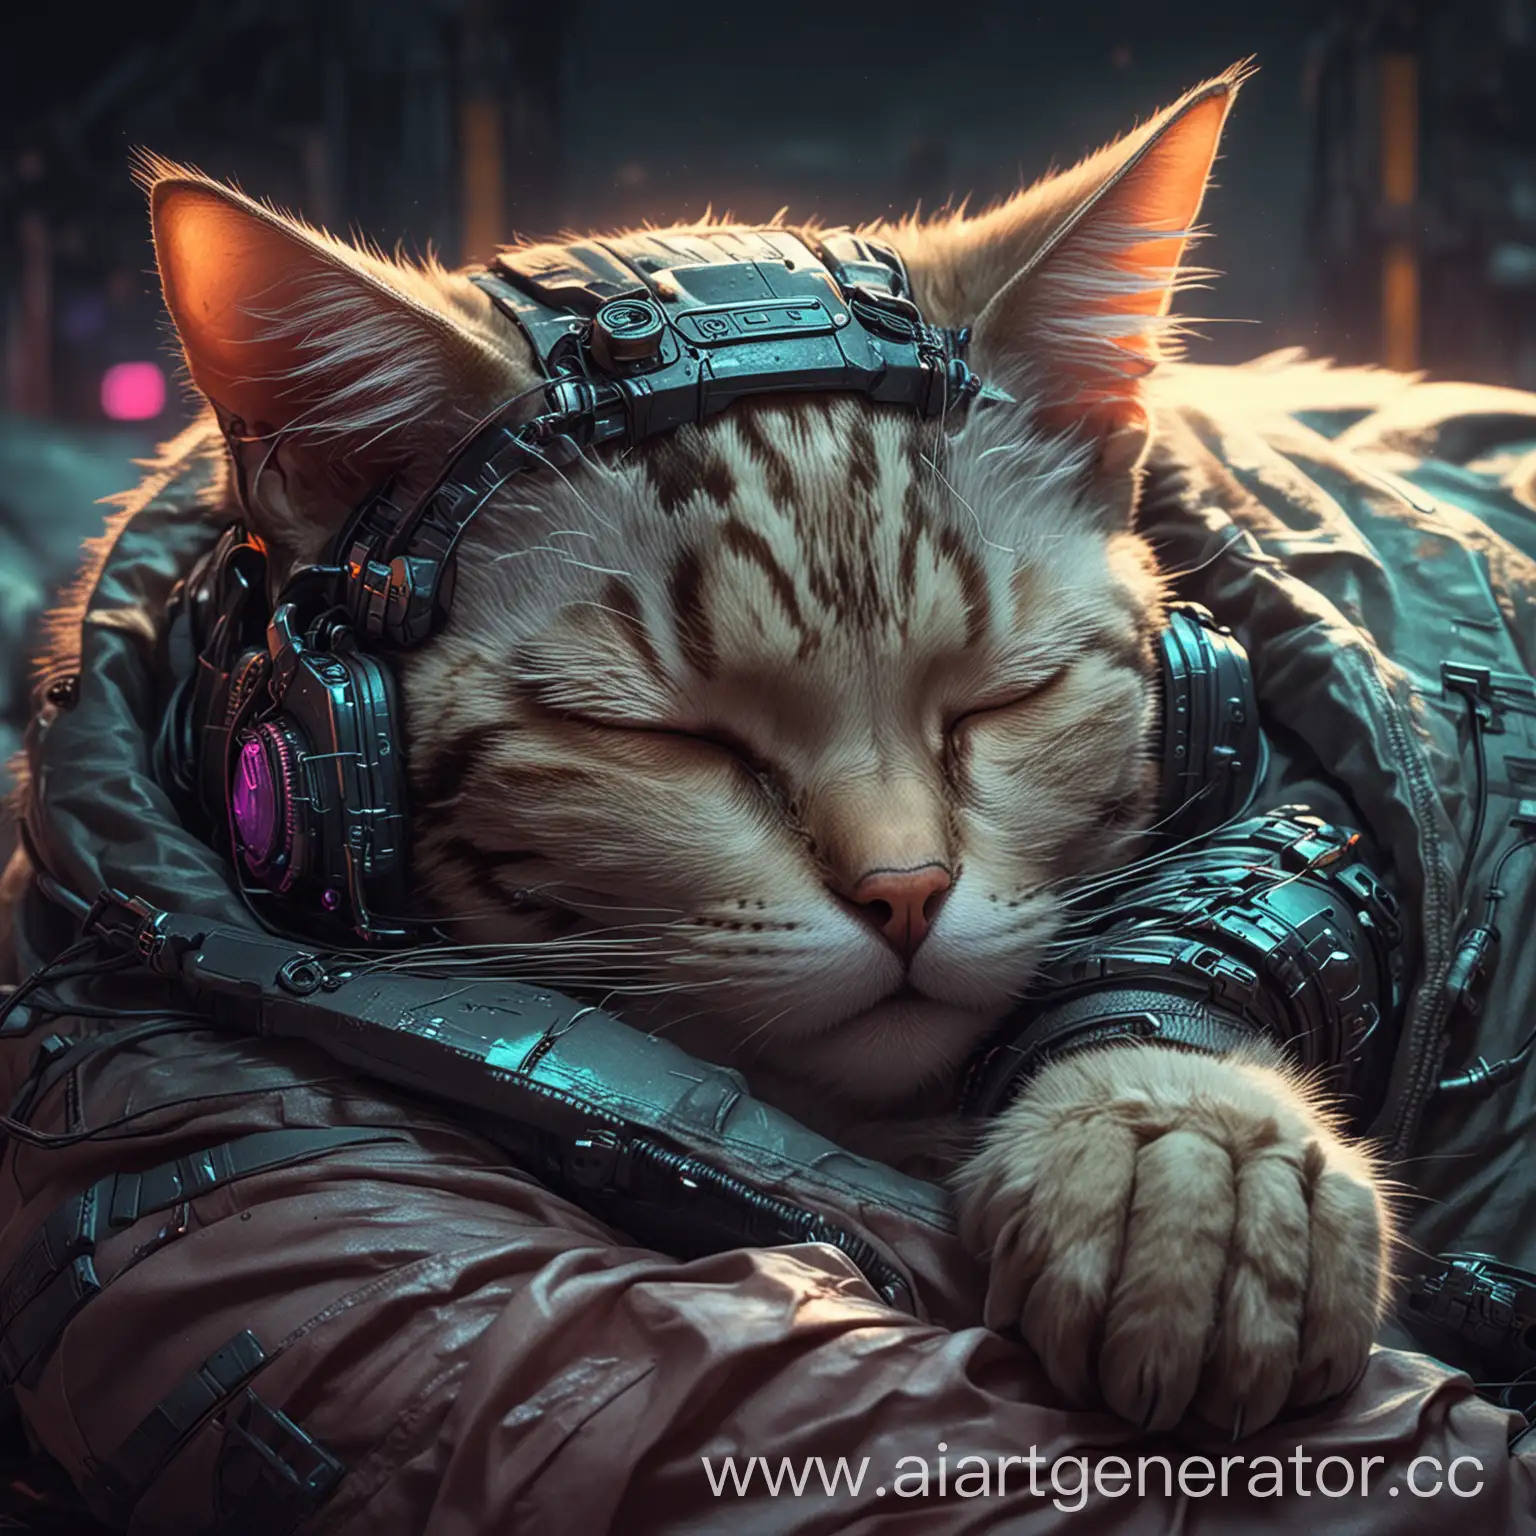 Sleeping-Cat-in-Cyberpunk-Style